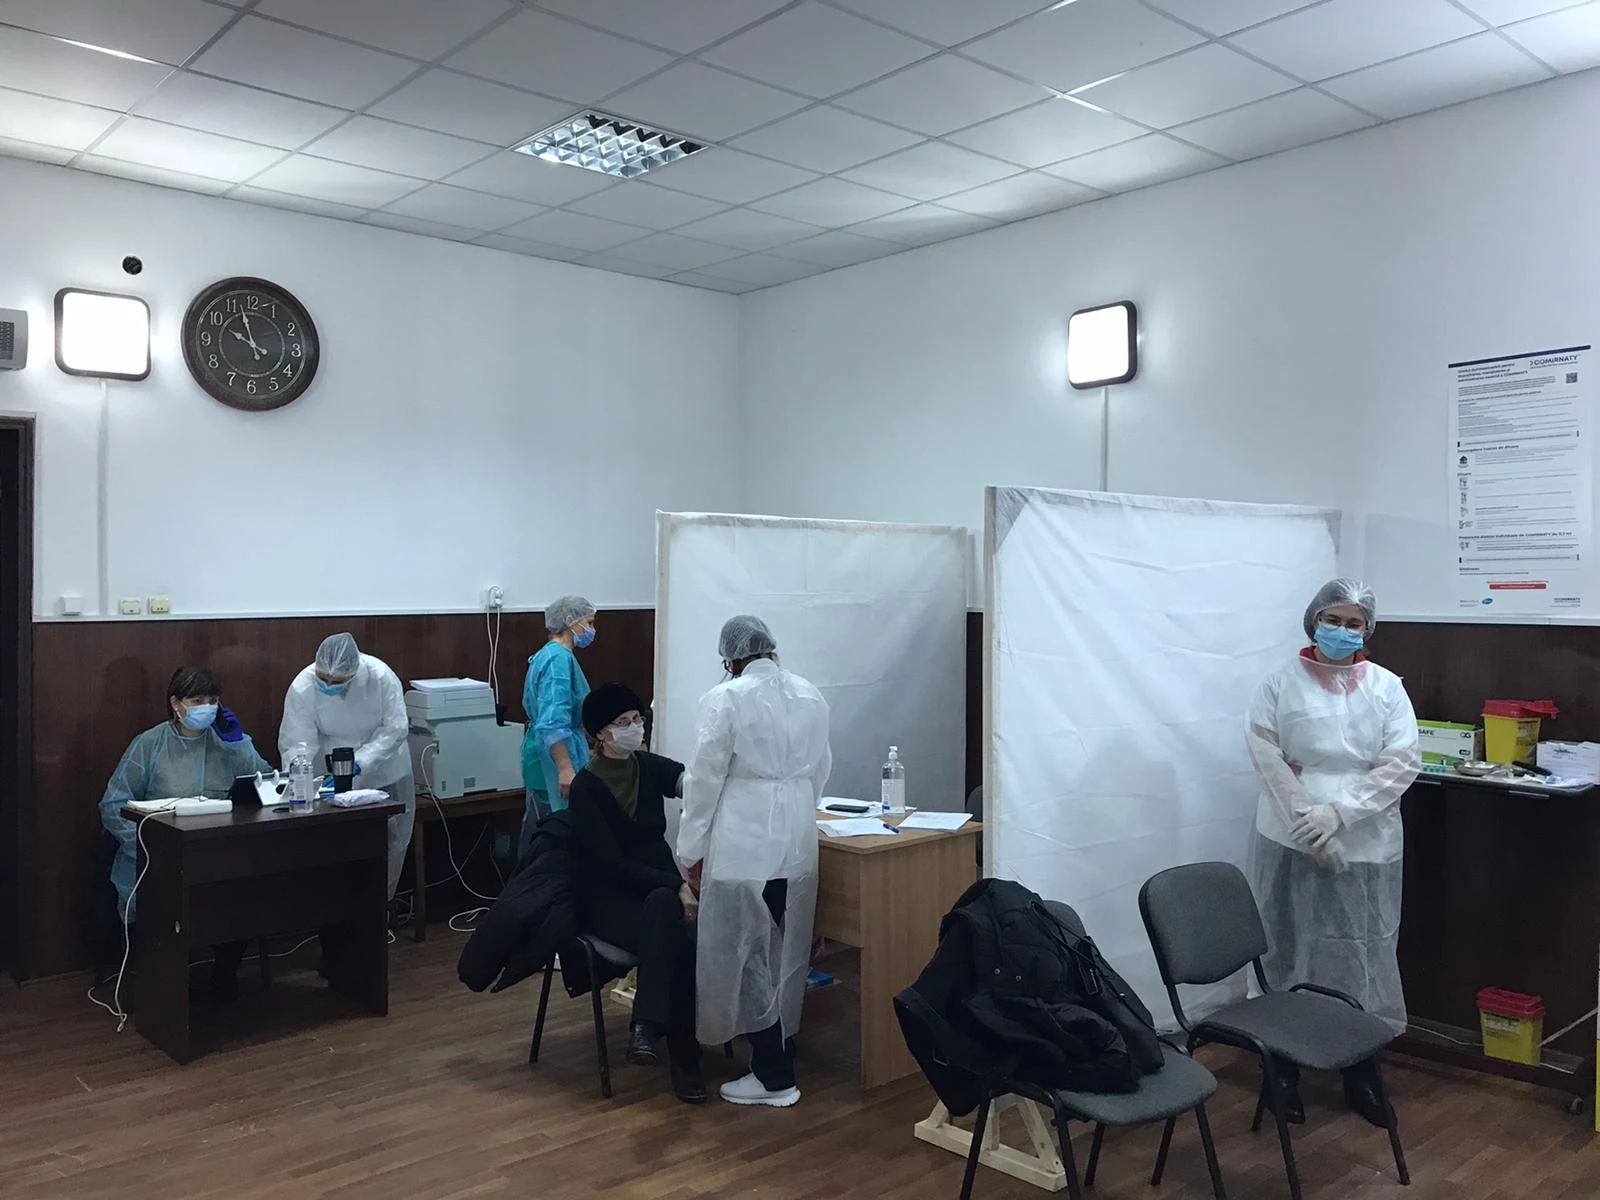 Astăzi a debutat etapa a II-a de vaccinare anti COVID-19 la Centrul de vaccinare aflat in cadrul Casei de Cultura din Calafat